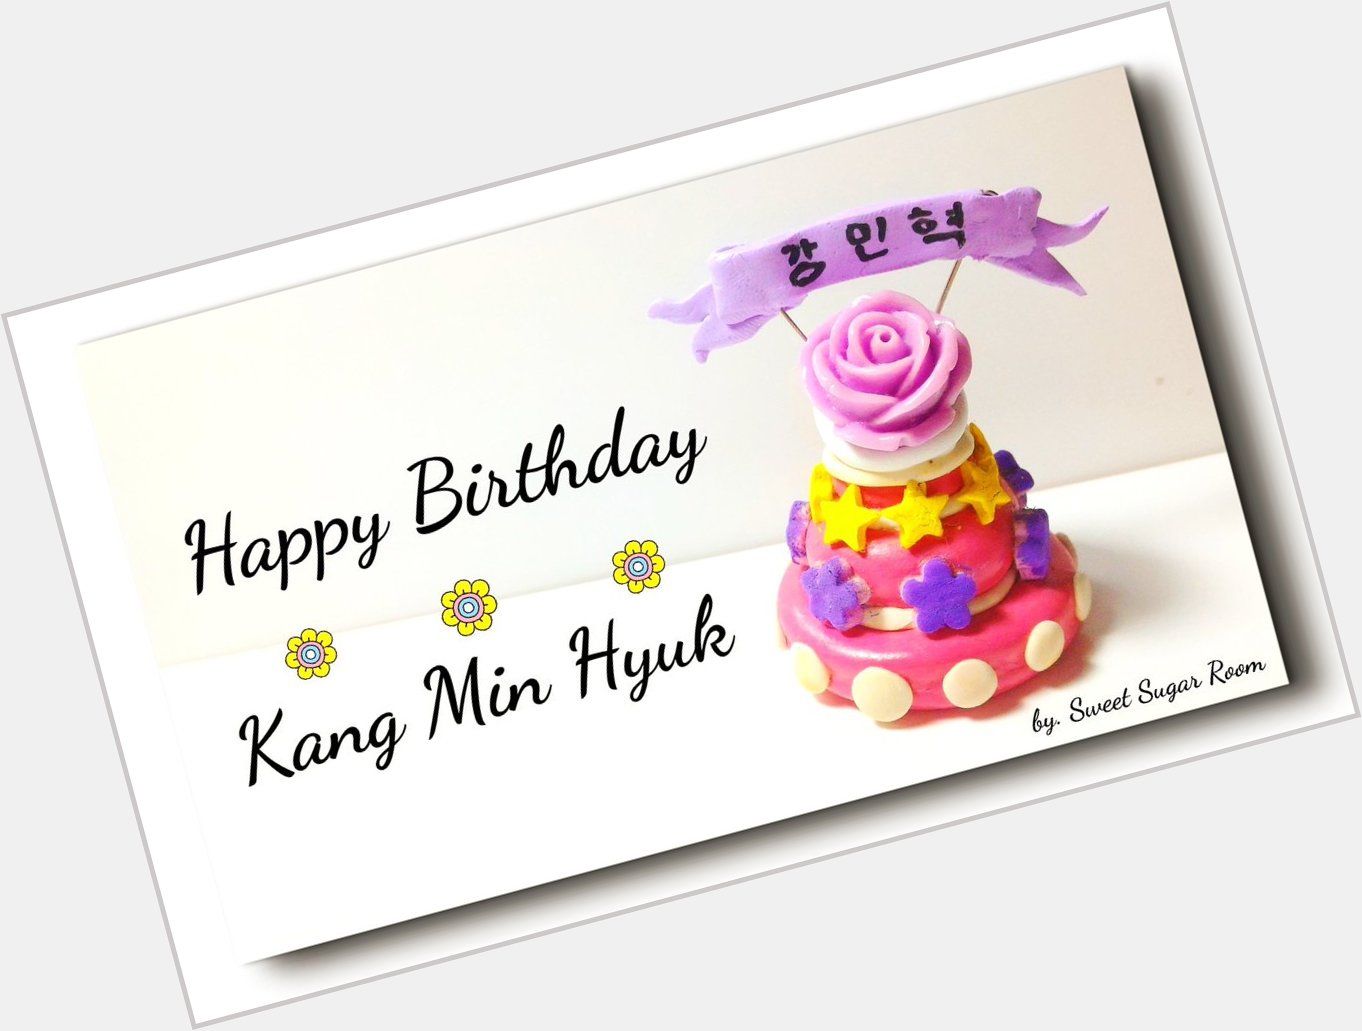 Happy birthday Kang Min Hyuk.   